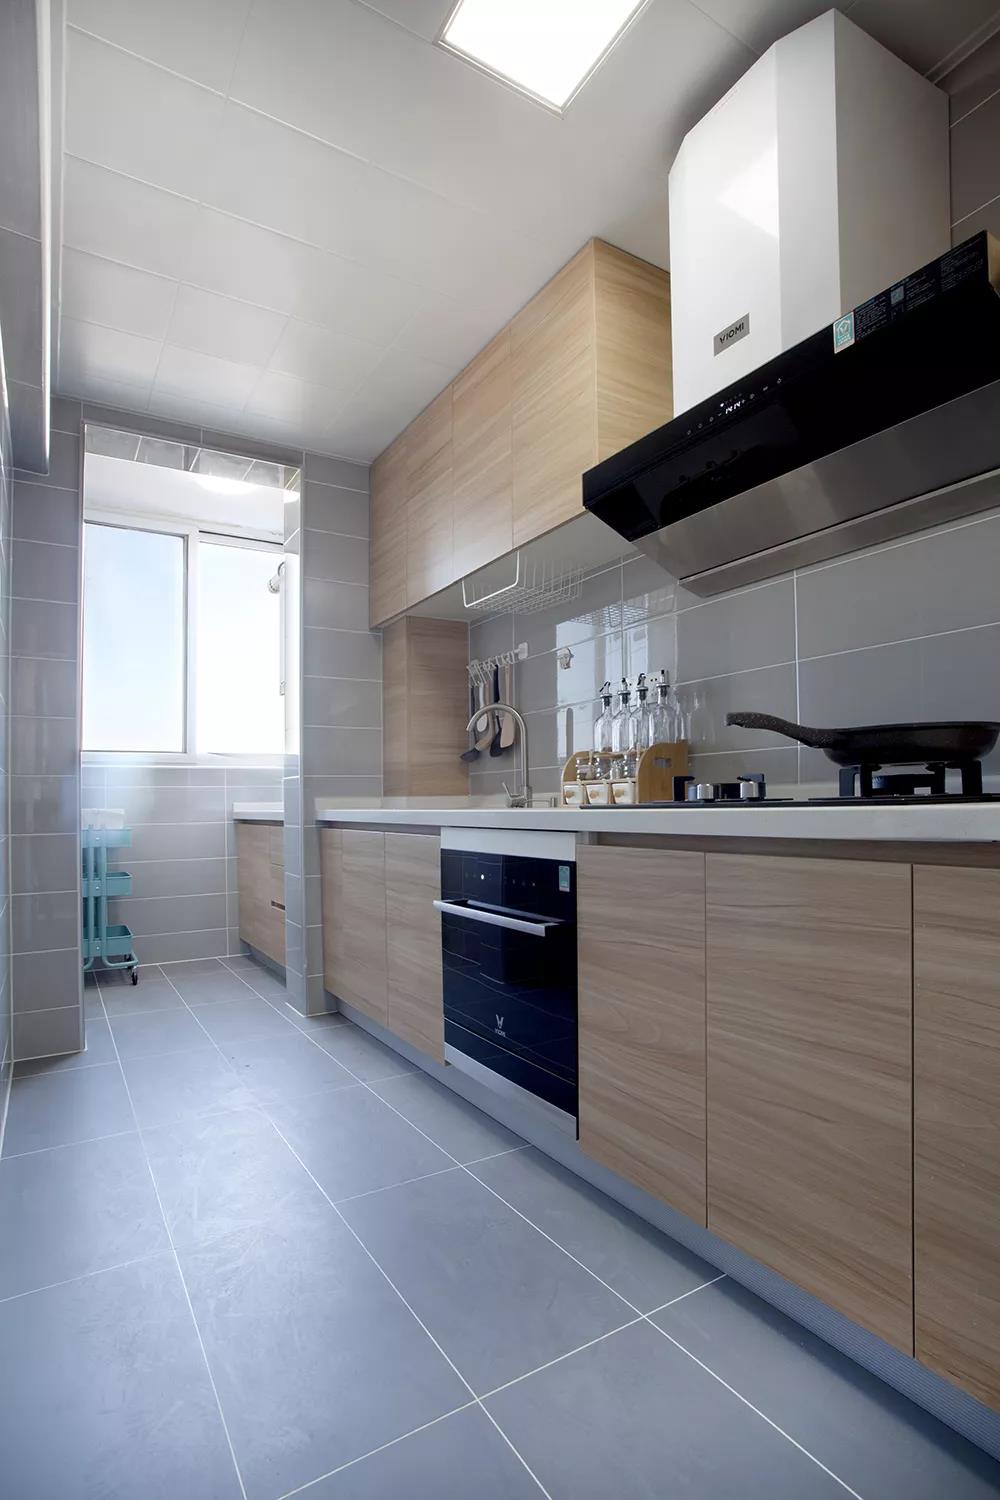 厨房运用时尚高级的木色色调，简化了很多视觉接触点，形成简洁大气的厨房空间。